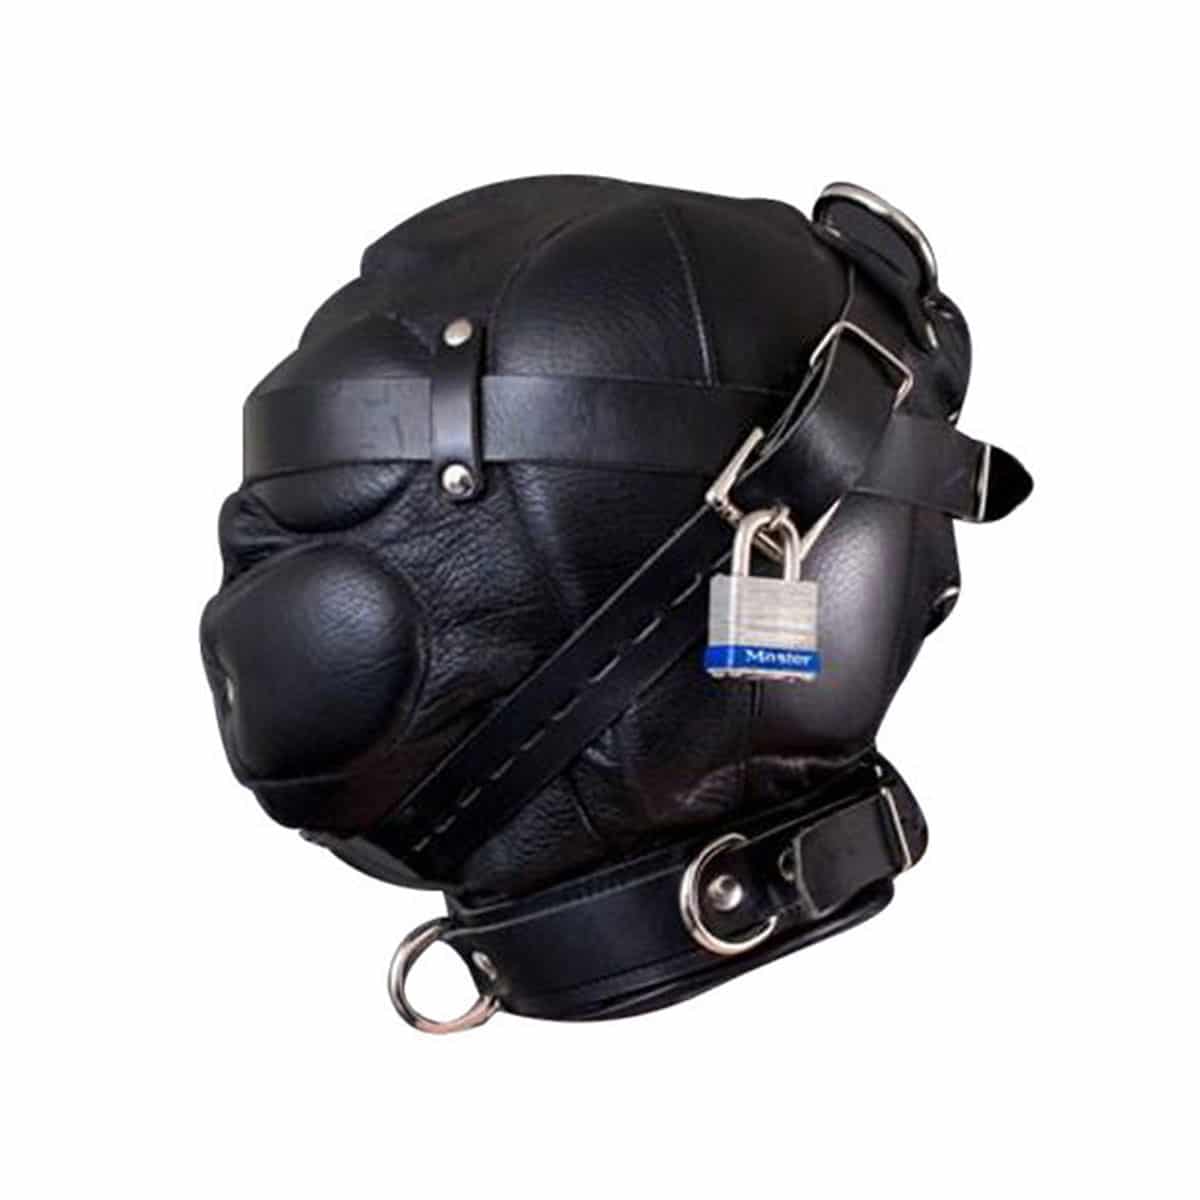 Unisex Sensory Deprivation Hood Bondage Mask Black Soft Leather